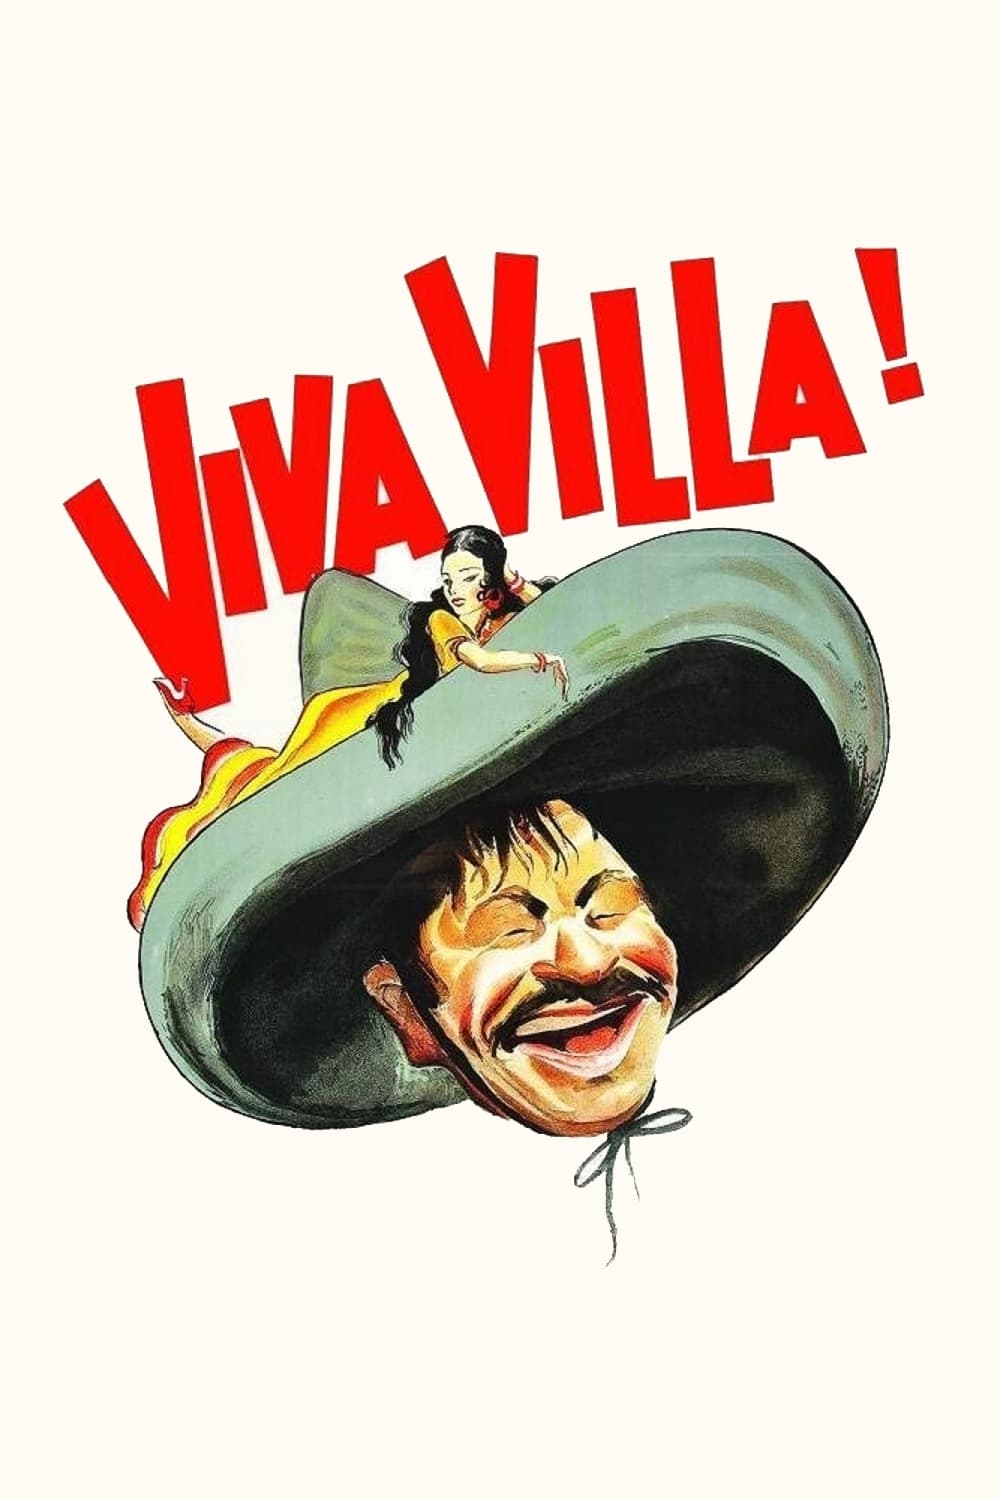 Viva Villa!